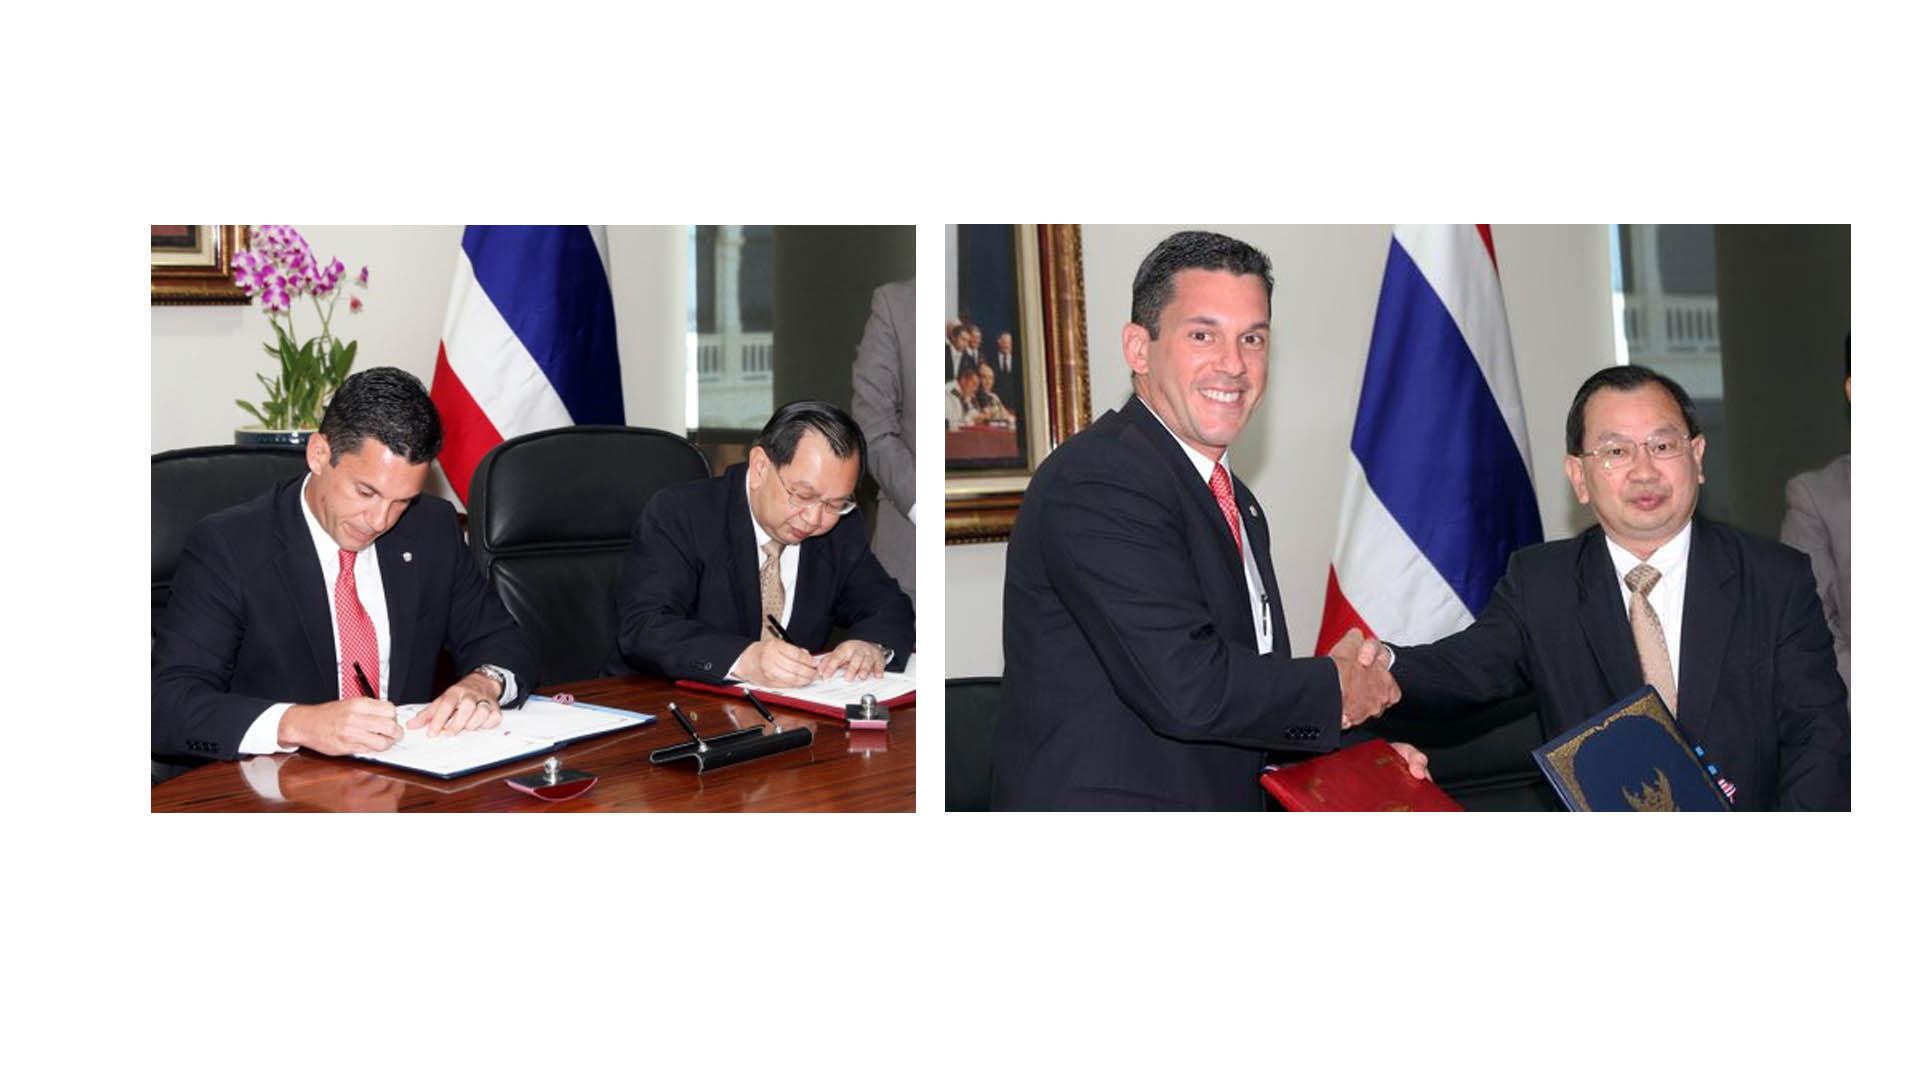 Con la firma de este acuerdo los dos países conseguirán un aumento en los intercambios diplomáticos y de tipo académico